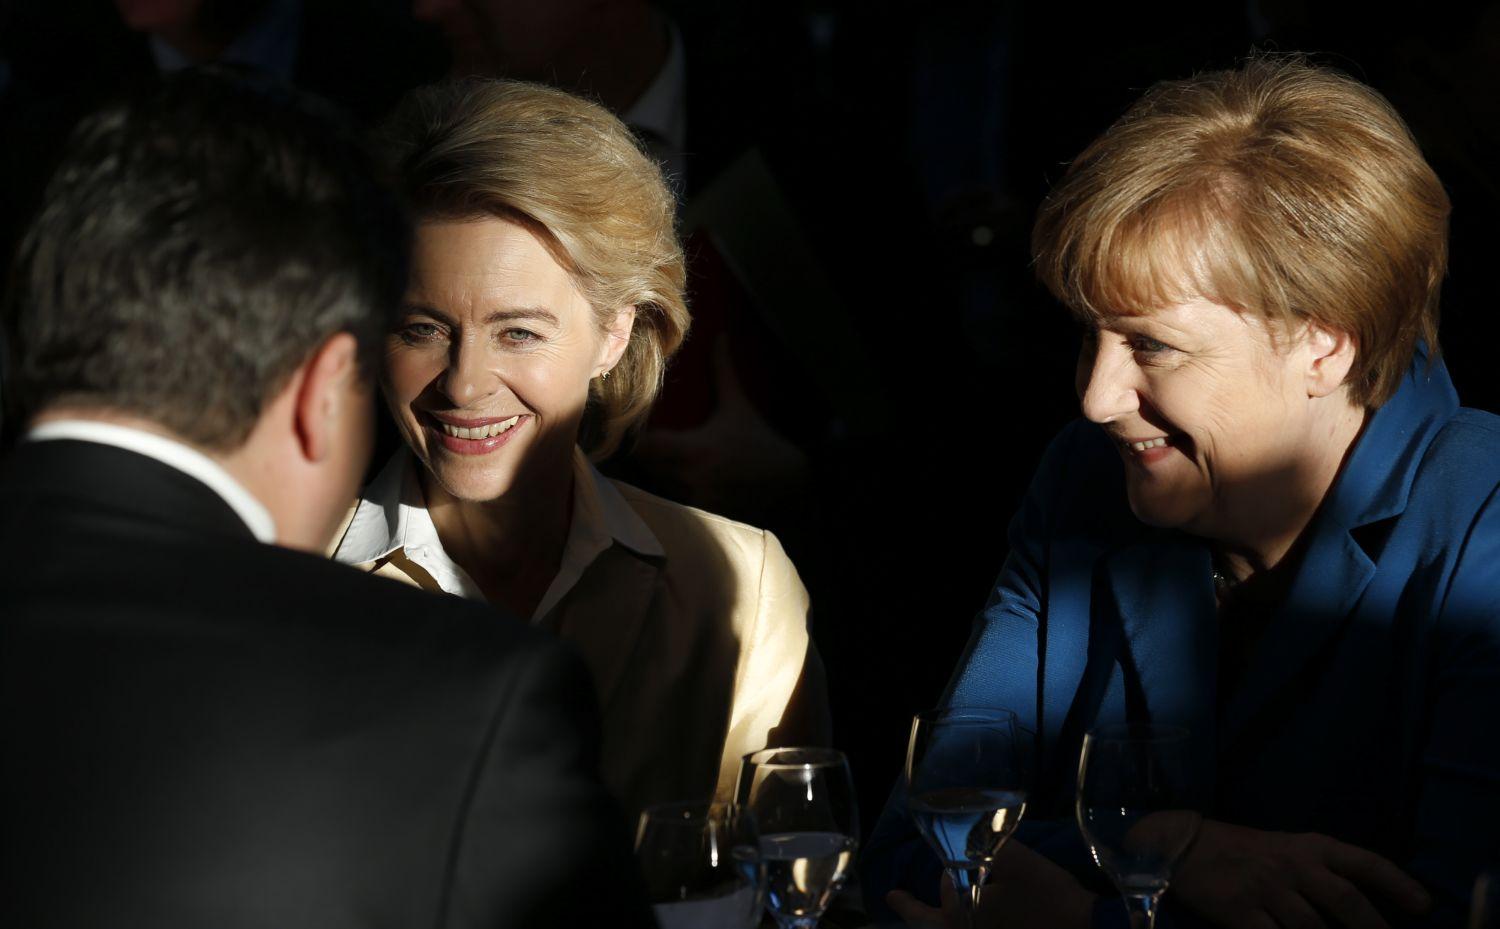 A CDU két vezető politikus asszonya, Angela Merkel kancellár (jobbra) és a védelemi minisztere, Ursula van der Leyen szemben a nagykoalíciós partner SPD elnökével, Sigmar Gabriel elnökkel. Lépniük kellett